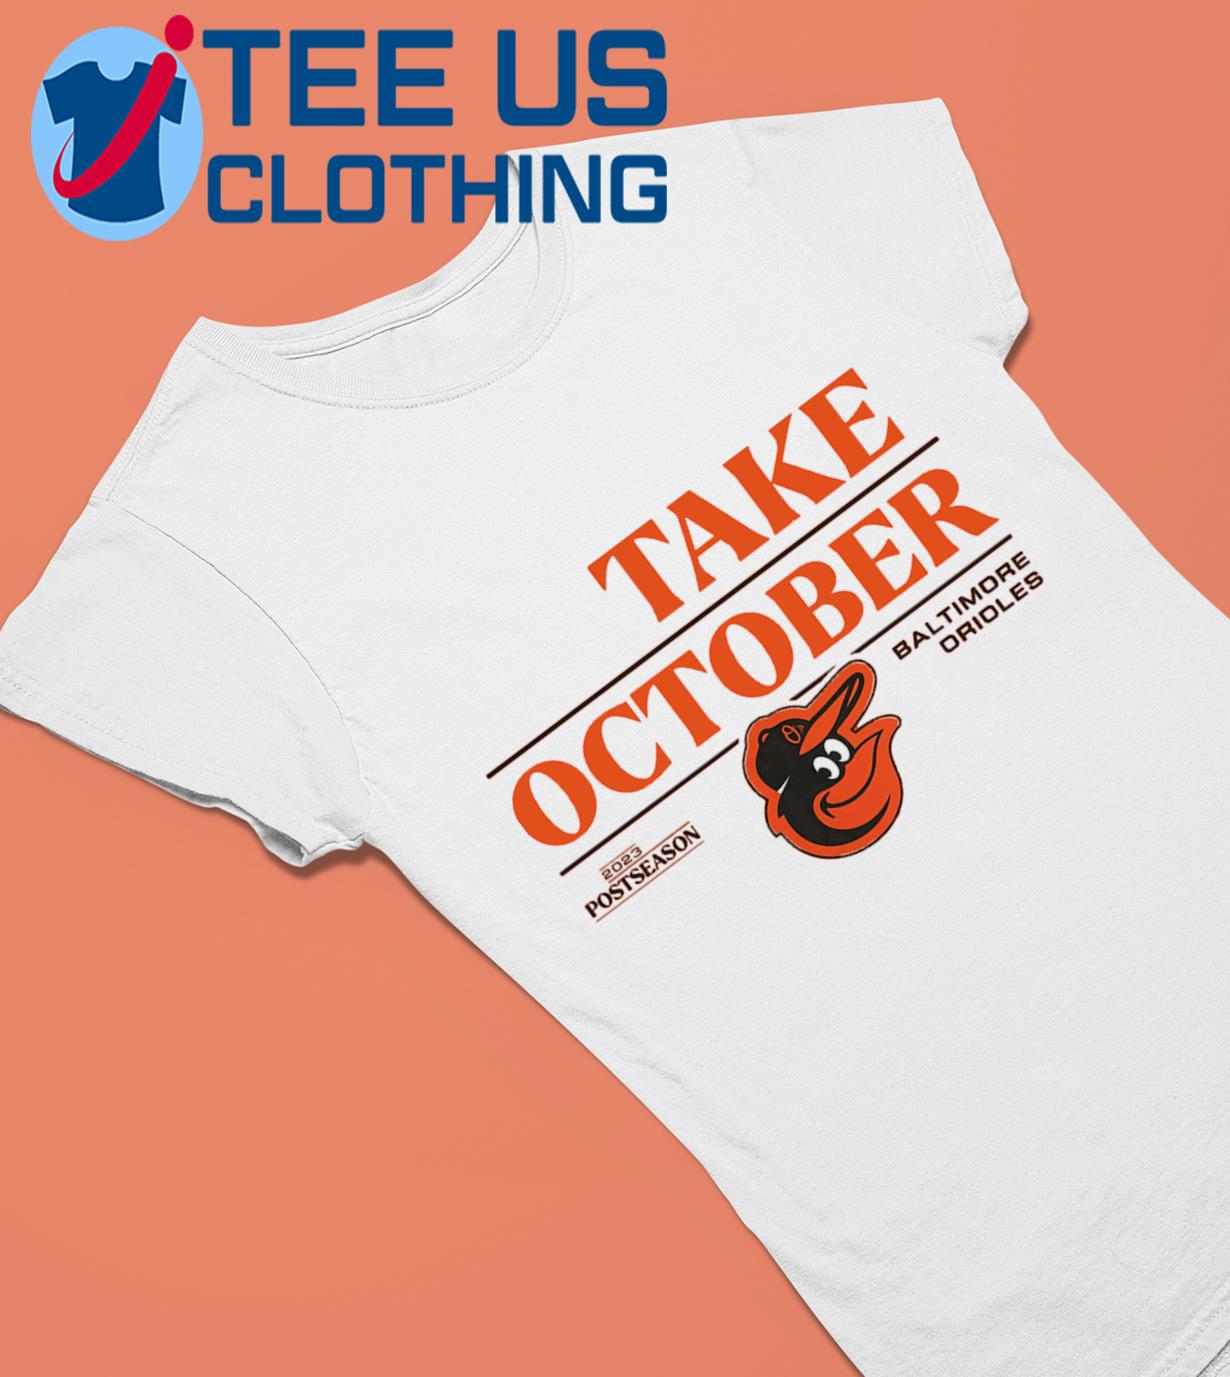 Baltimore Orioles Take October Orange 2023 Postseason shirt